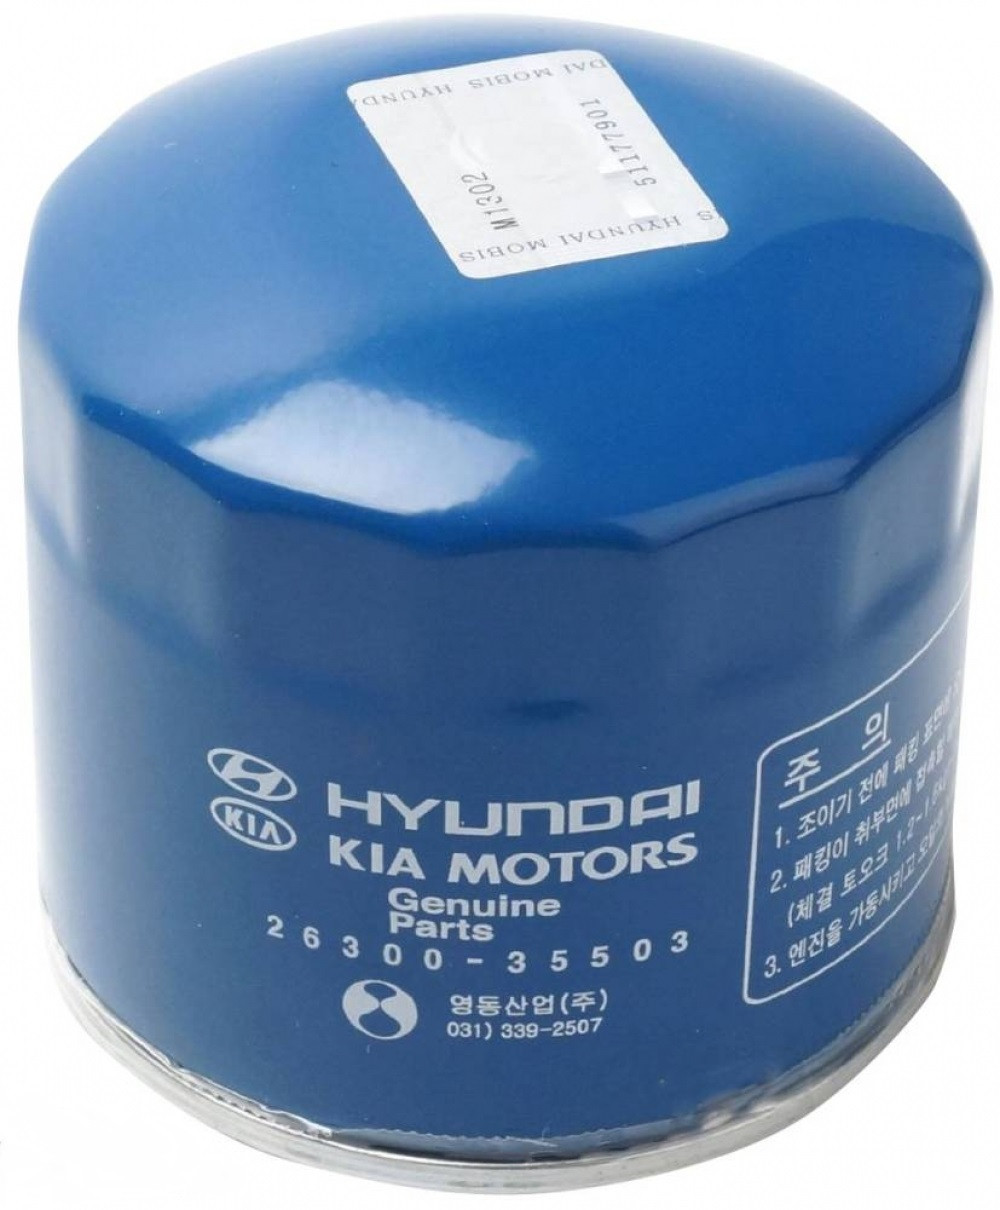 Фільтр масляний оригінальний Hyundai/KIA 26300-35503